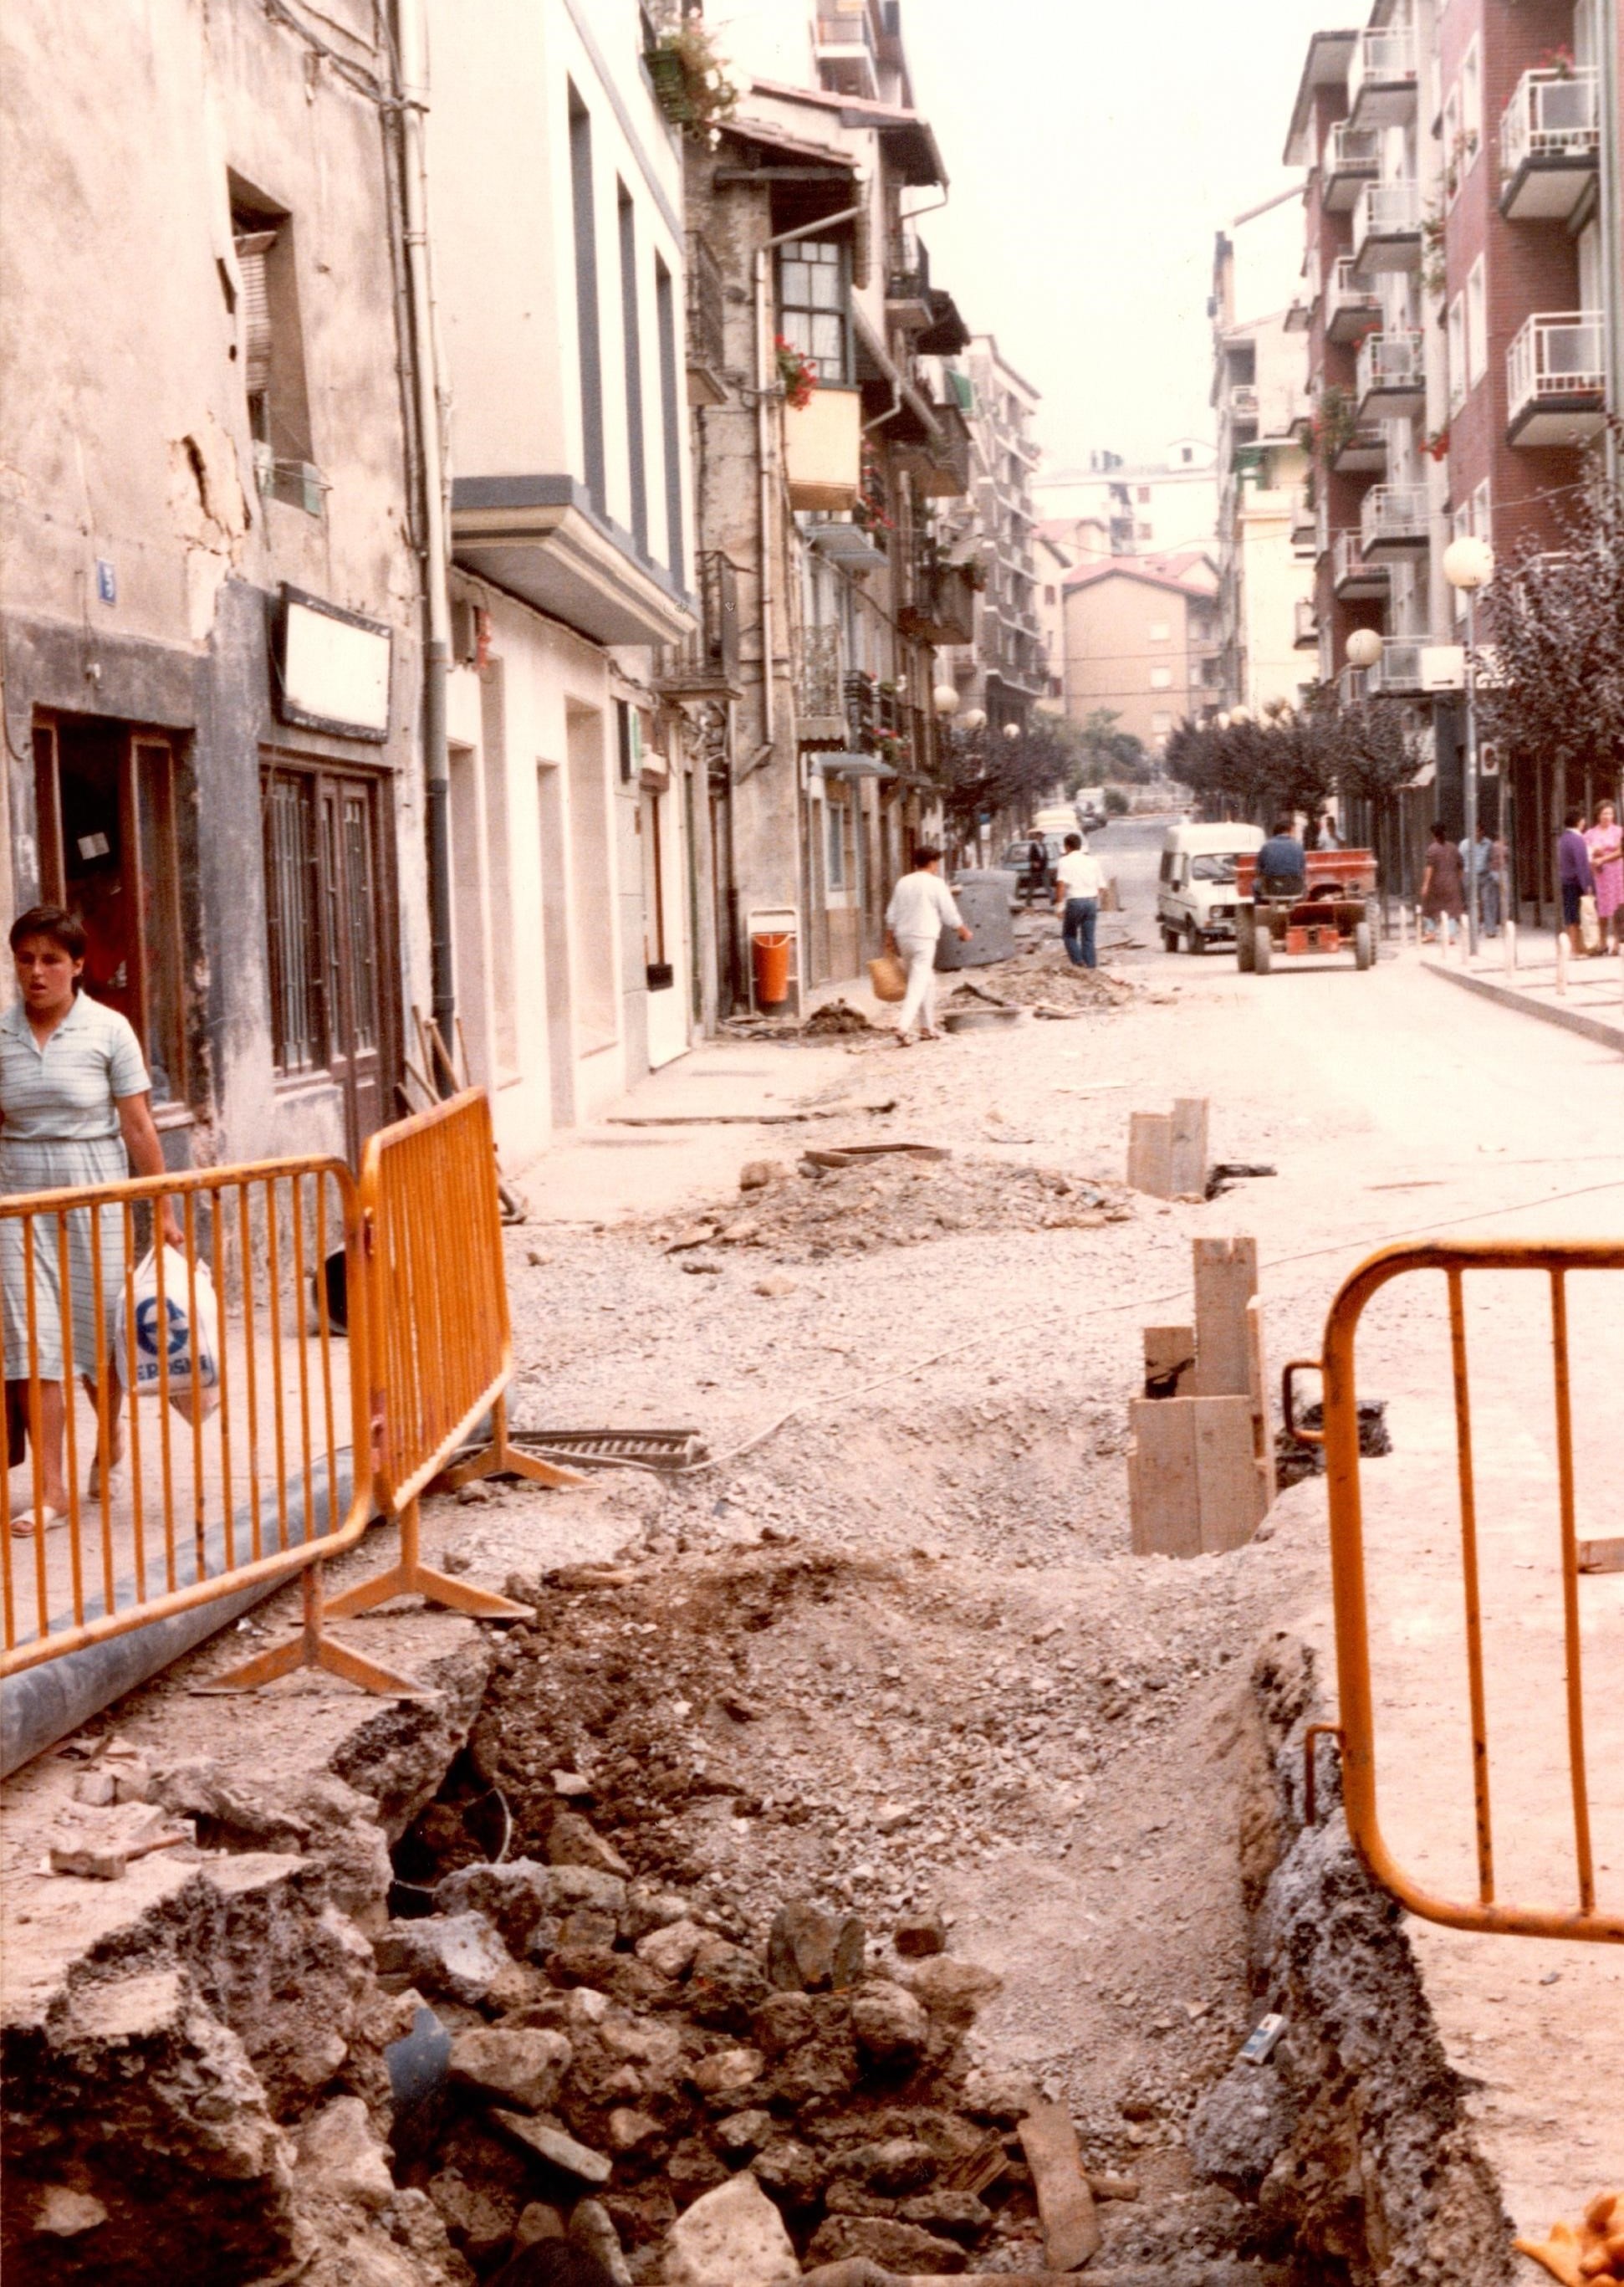 Se ve el asfalto de la calle Zubiaurre, la carretera levantada con escombros y vallas amarillas. A la izquierda una señora camina con bolsas en la mano por la acera y al fondo puede verse maquinaria de la obra y algunos obreros. 